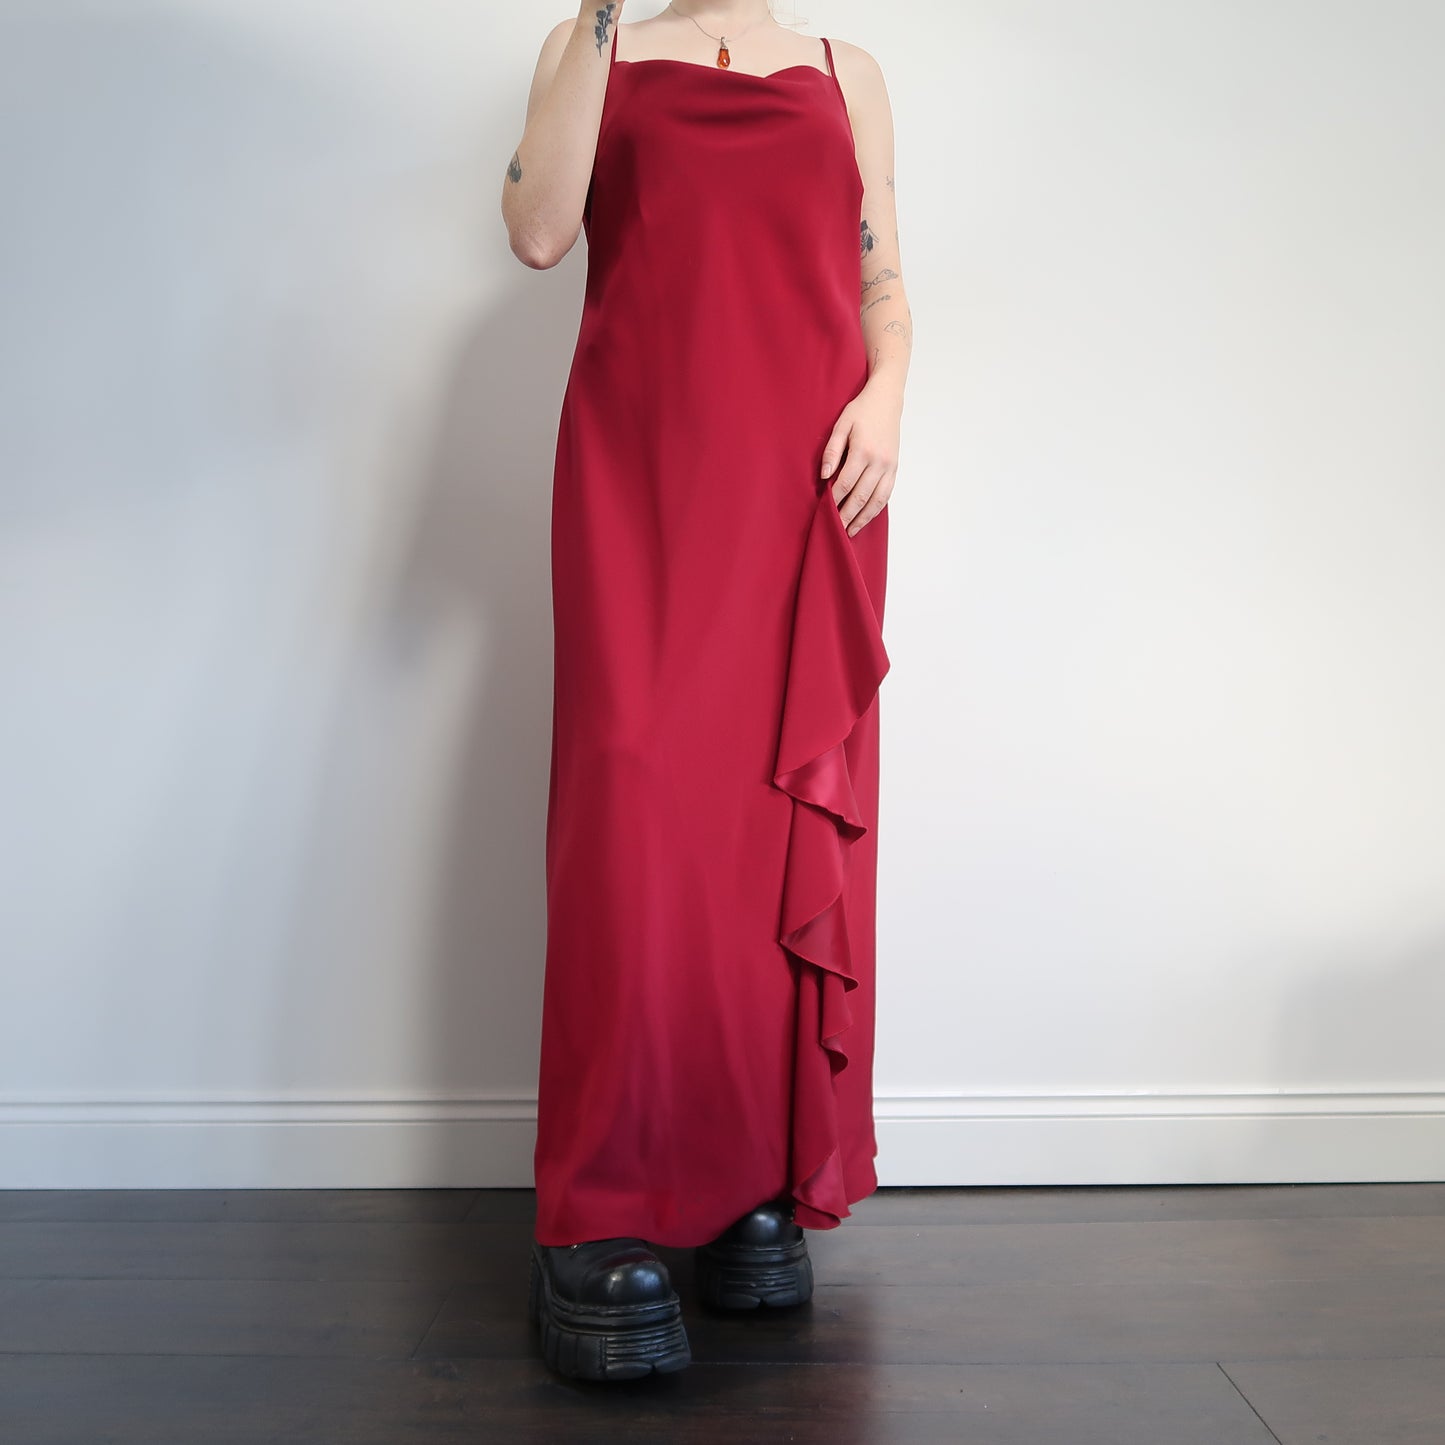 Raspberry red dress - size 14/16